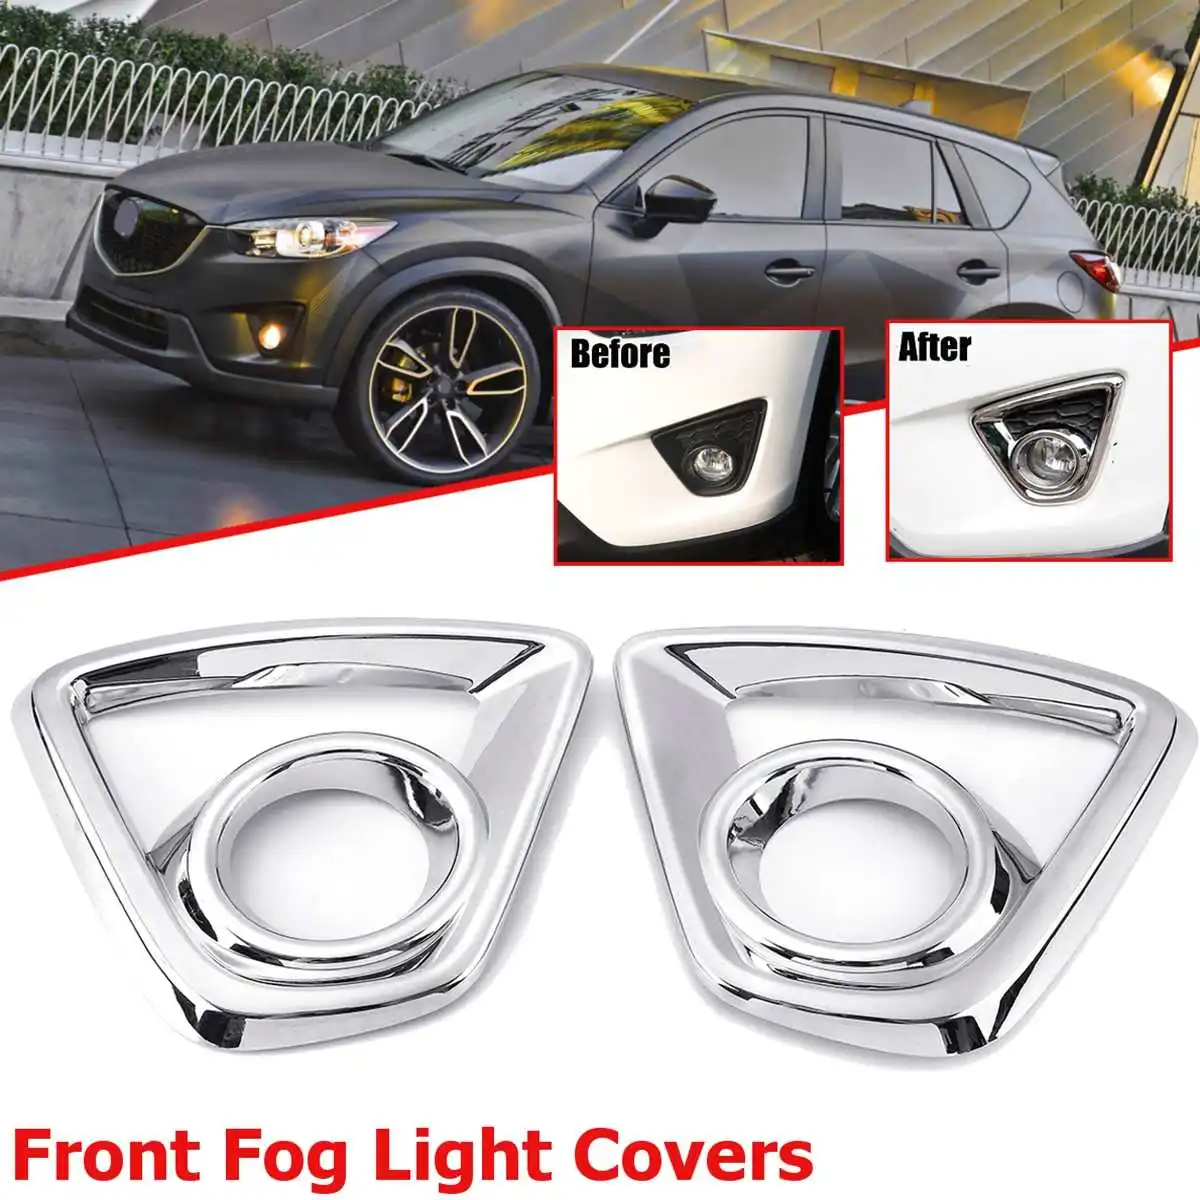 Pára-choques luz de Nevoeiro Chrome Enfeite Para o Mazda Cx-5 Cx5 2013 2014 2015 2016 Traseira do Carro Luzes de Abajur Moldura Guarnição Tampa Estilo